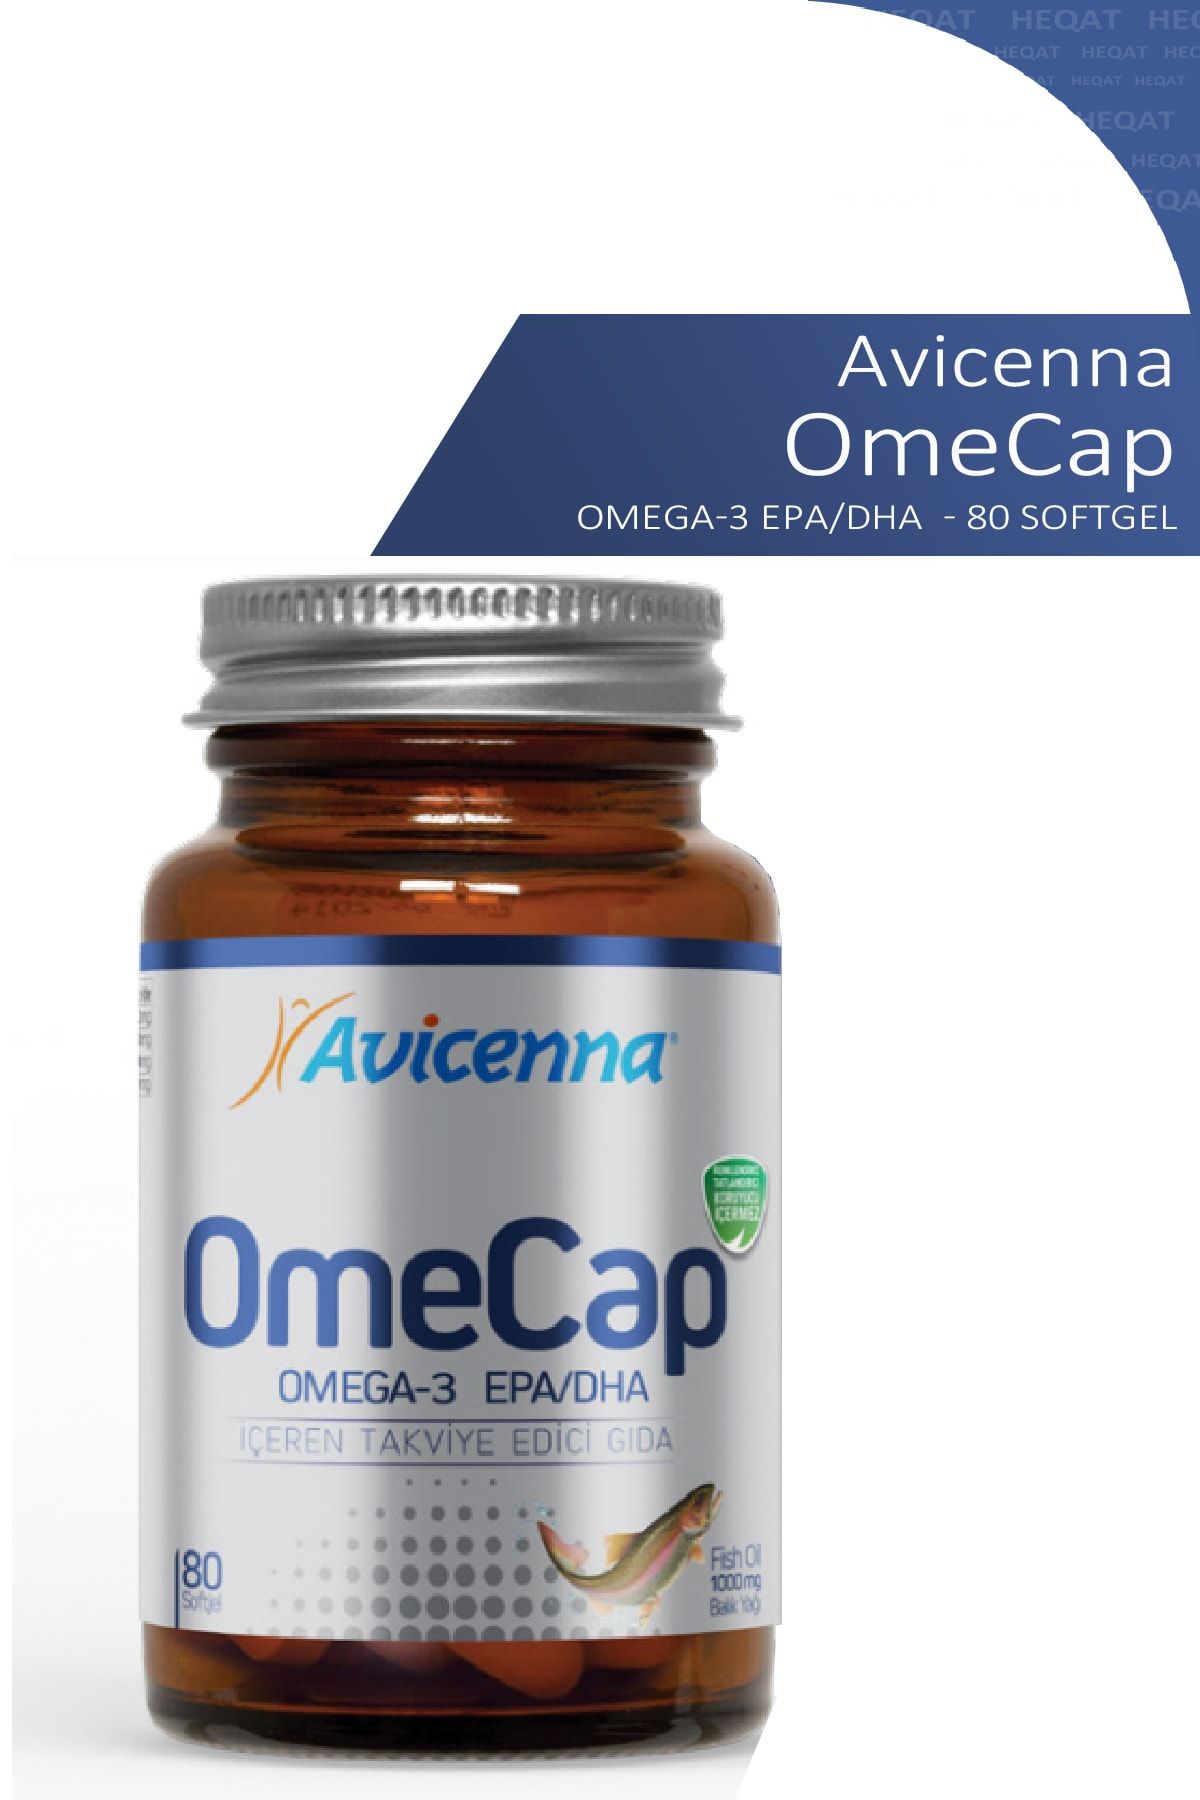 Avicenna Omecap - Omega 3 Içeren Takviye Edici Gıda - 80 Softjel - 8690088011726